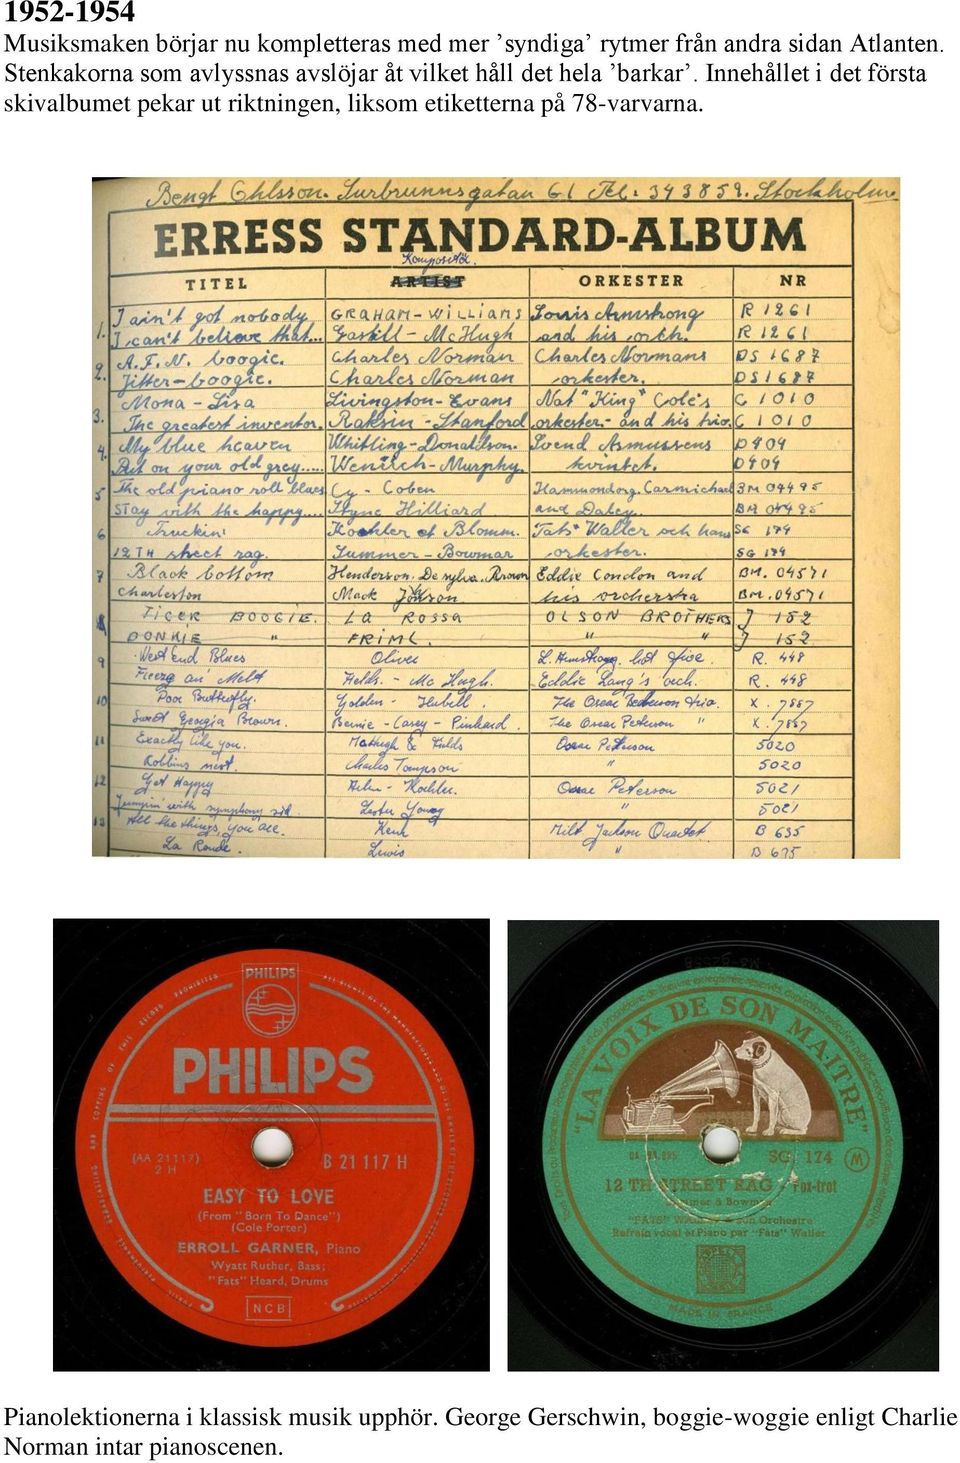 Innehållet i det första skivalbumet pekar ut riktningen, liksom etiketterna på 78-varvarna.